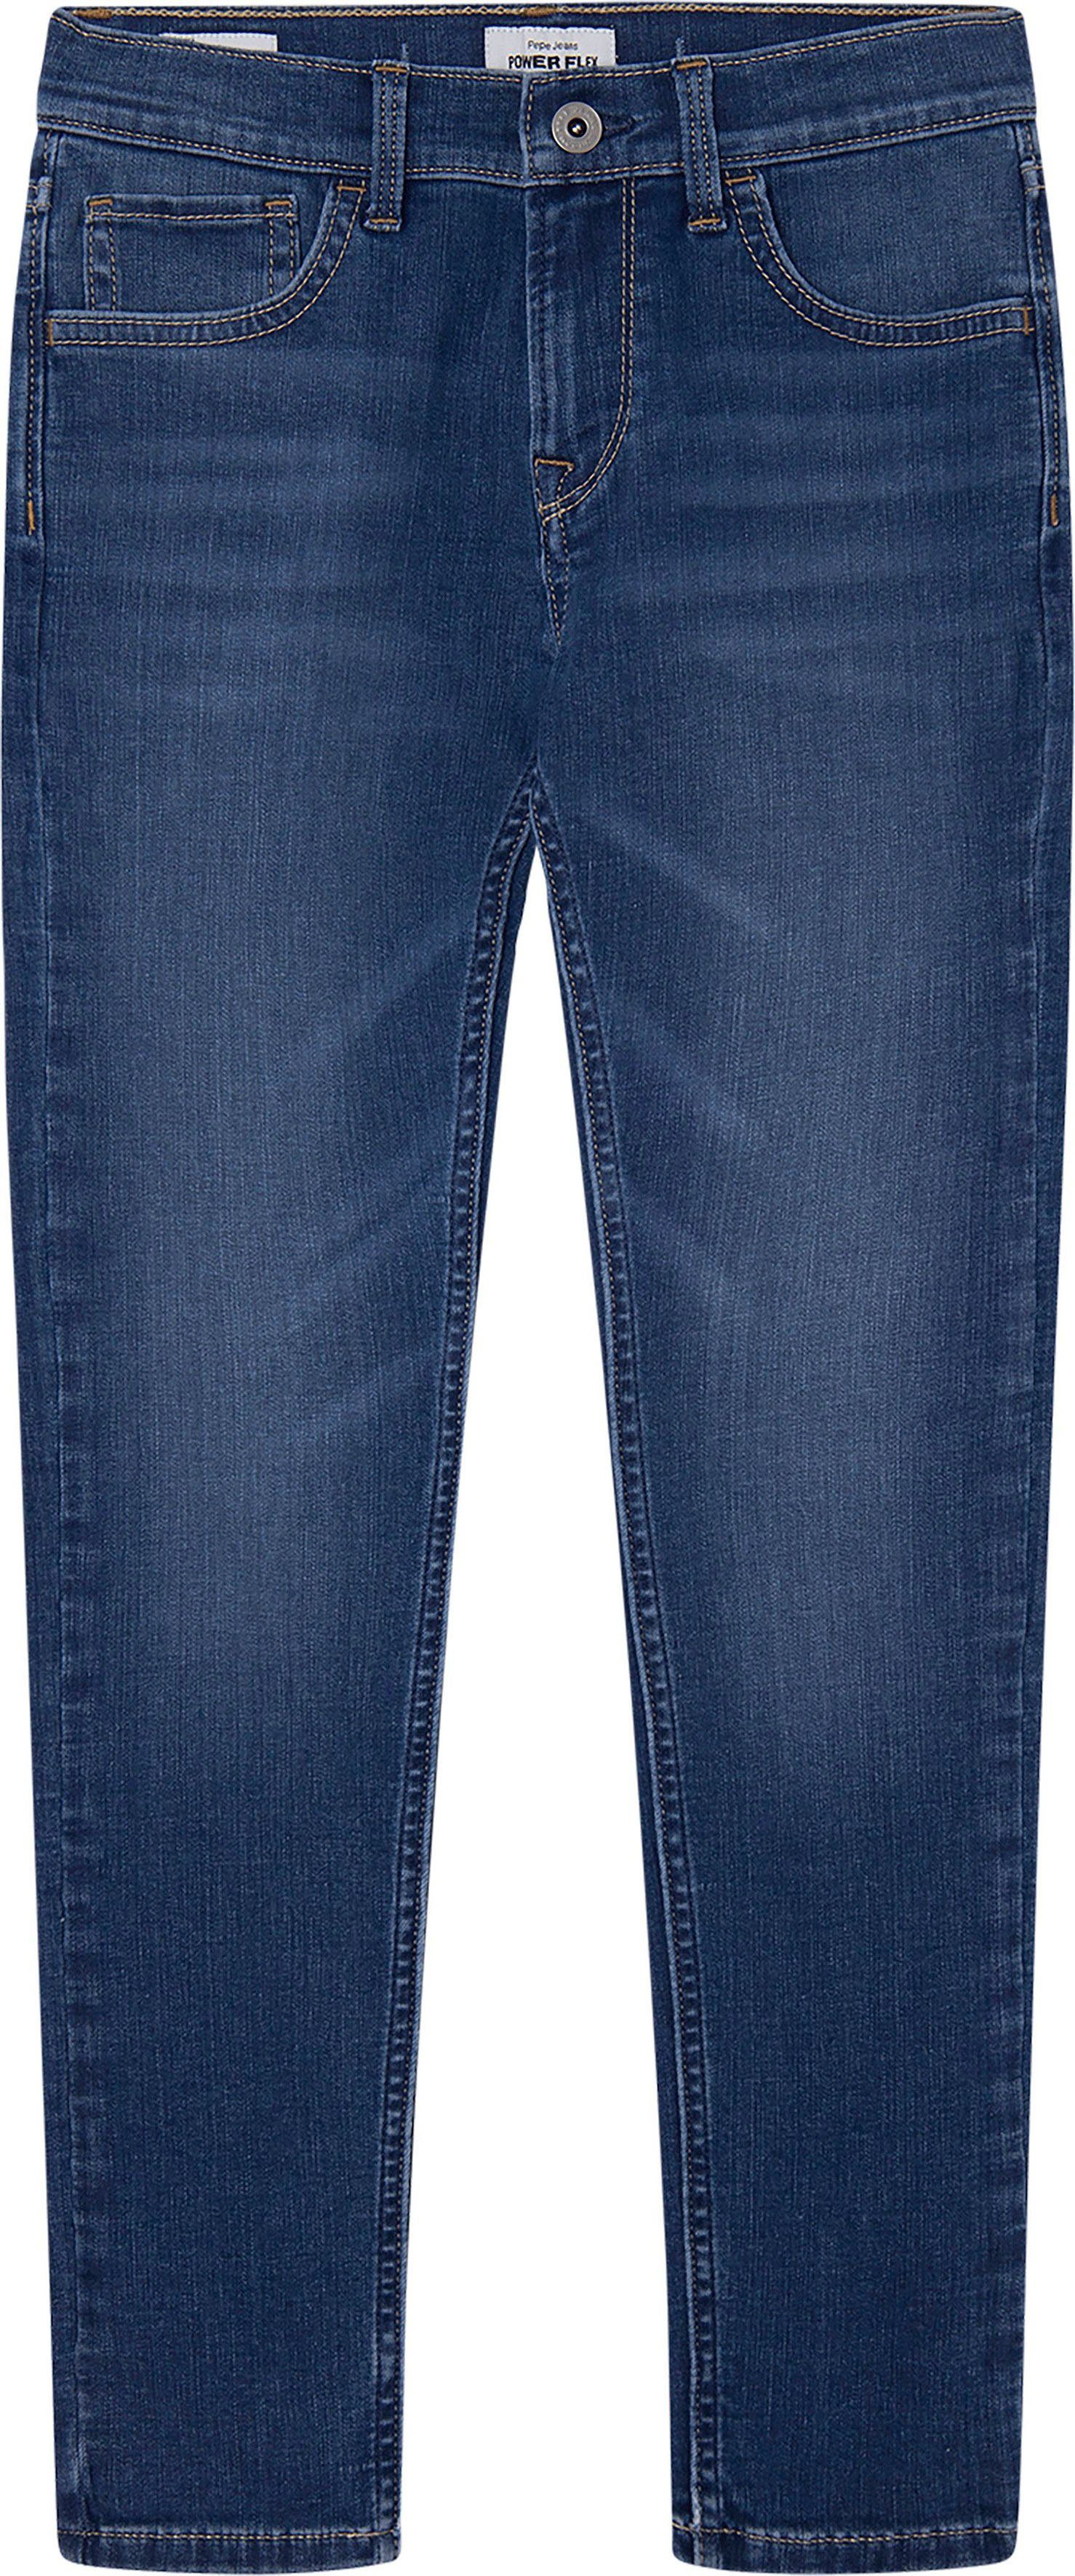 Pepe Jeans 5-pocketsjeans Teo nu online | OTTO